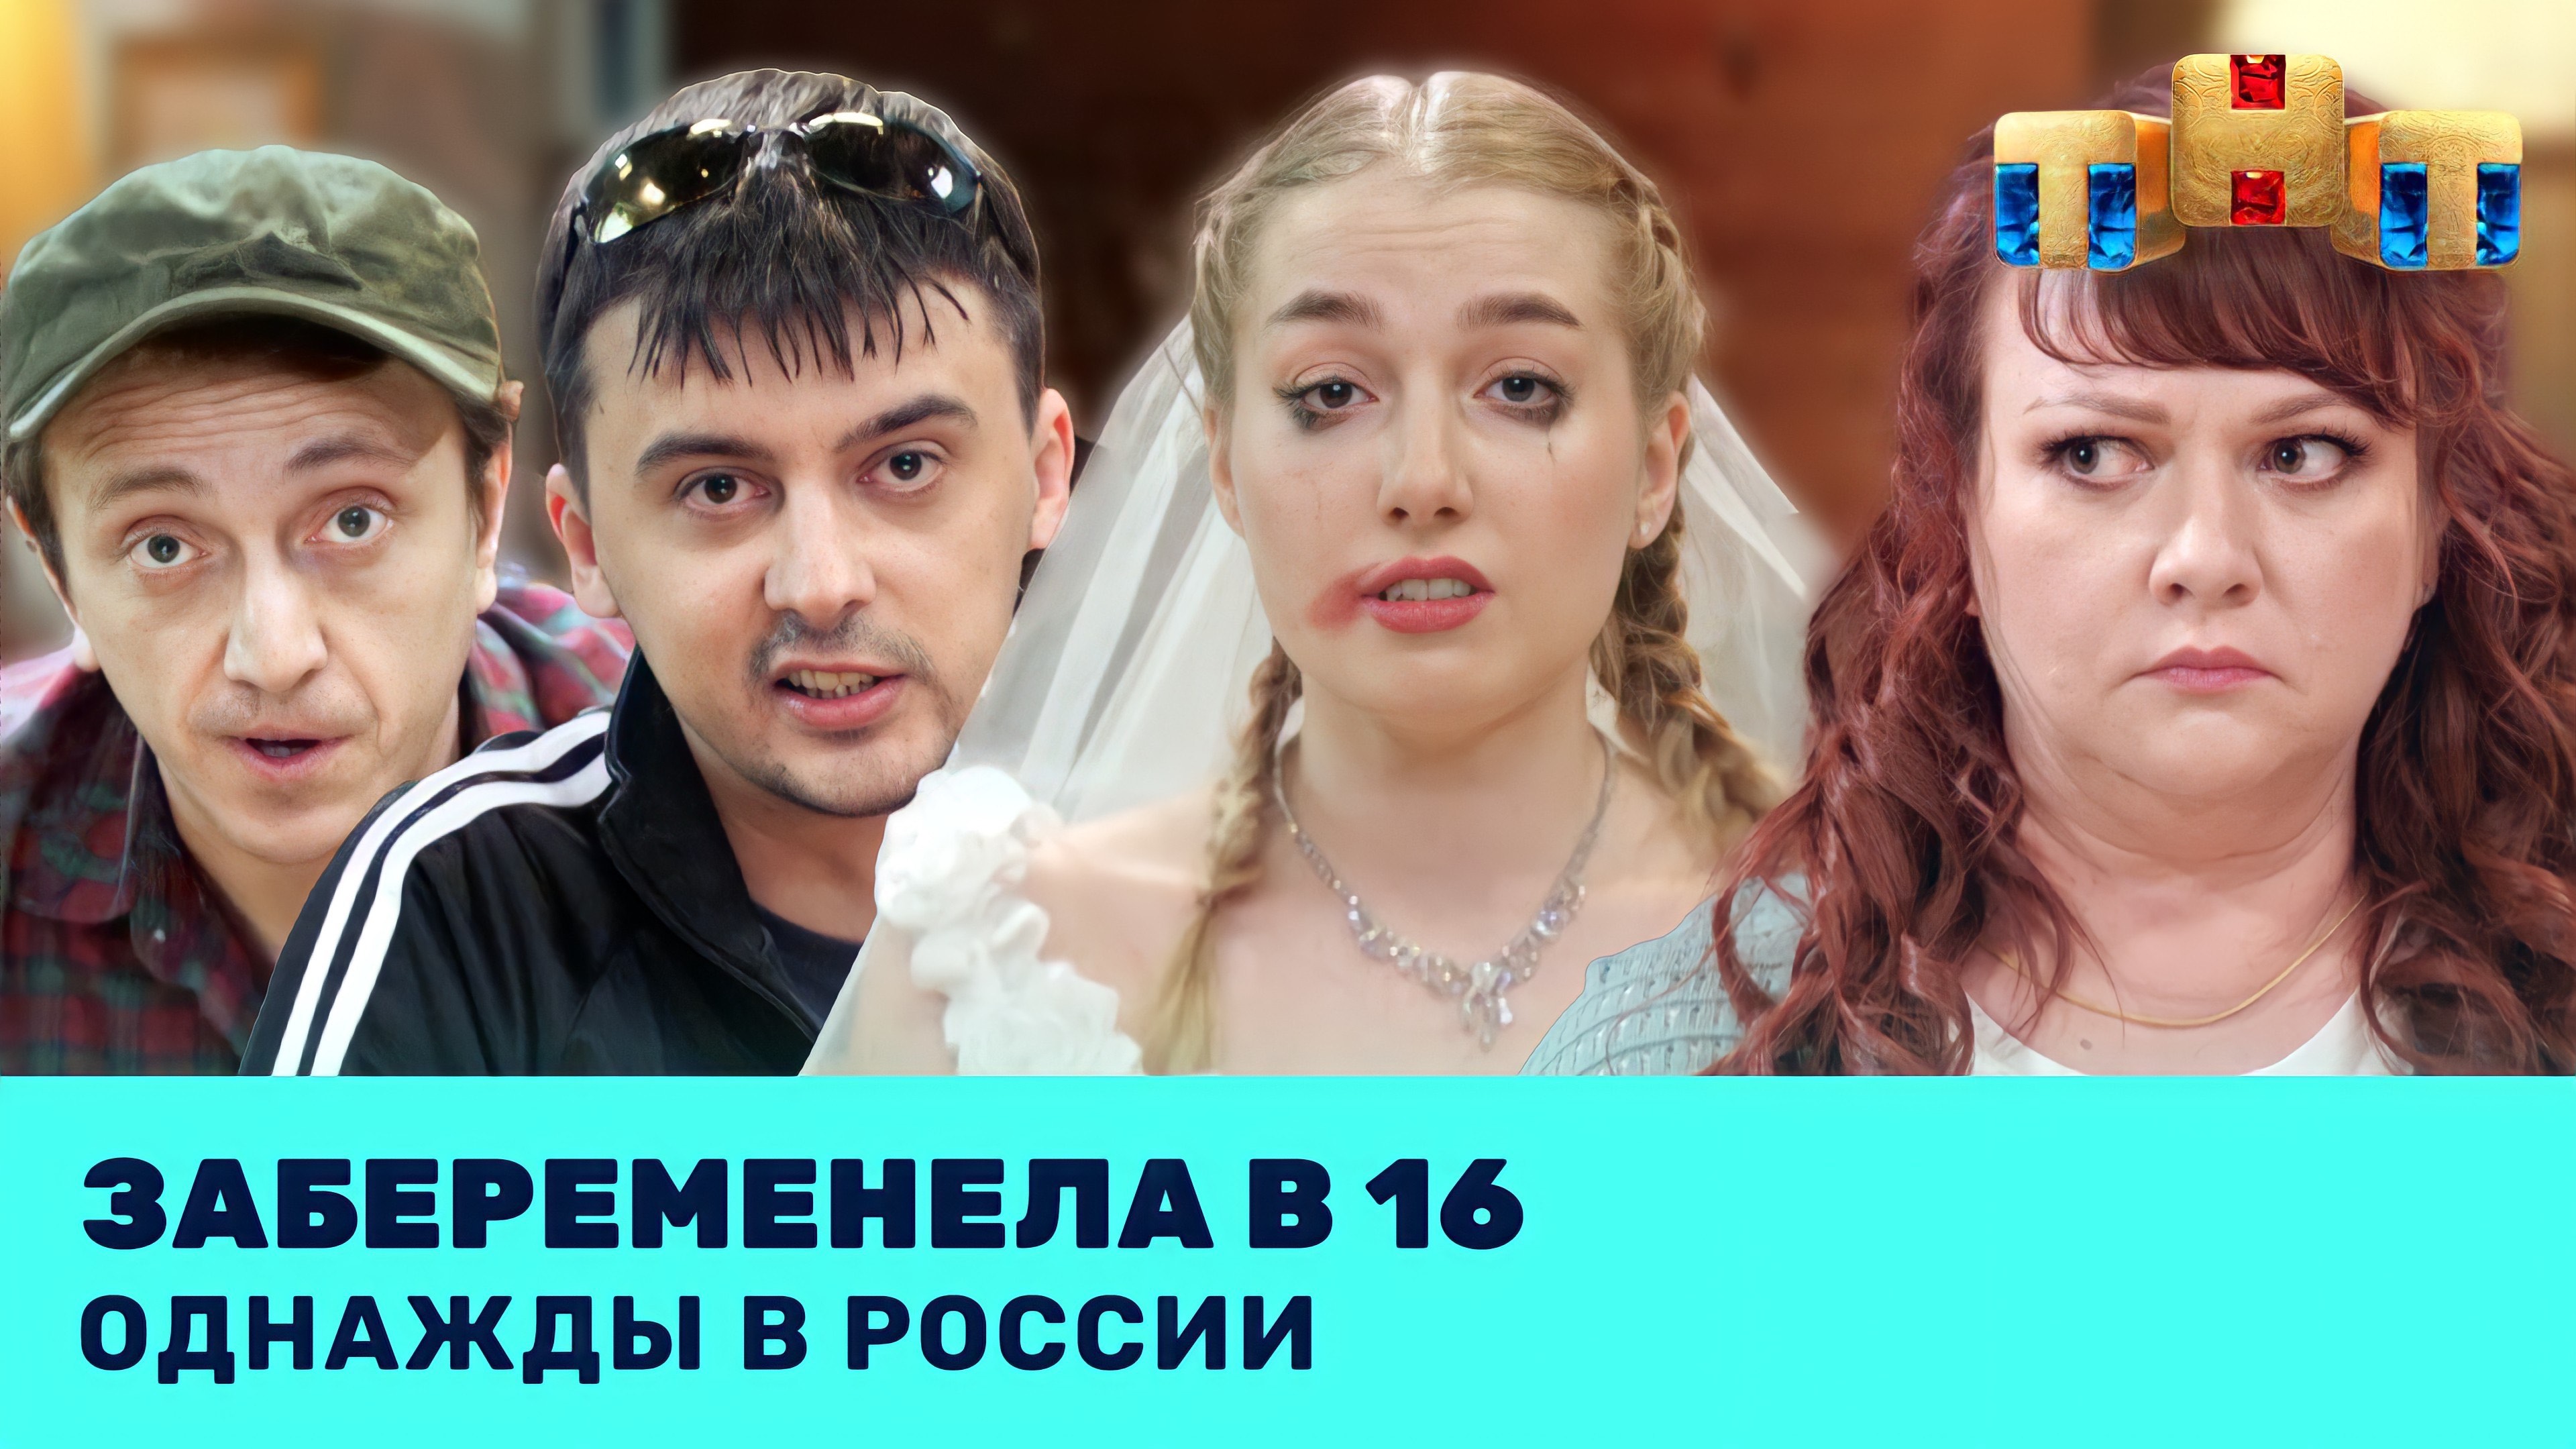 Однажды в России 1 сезон 5 выпуск смотреть онлайн видео бесплатно Эфир от 11 03 2022 11